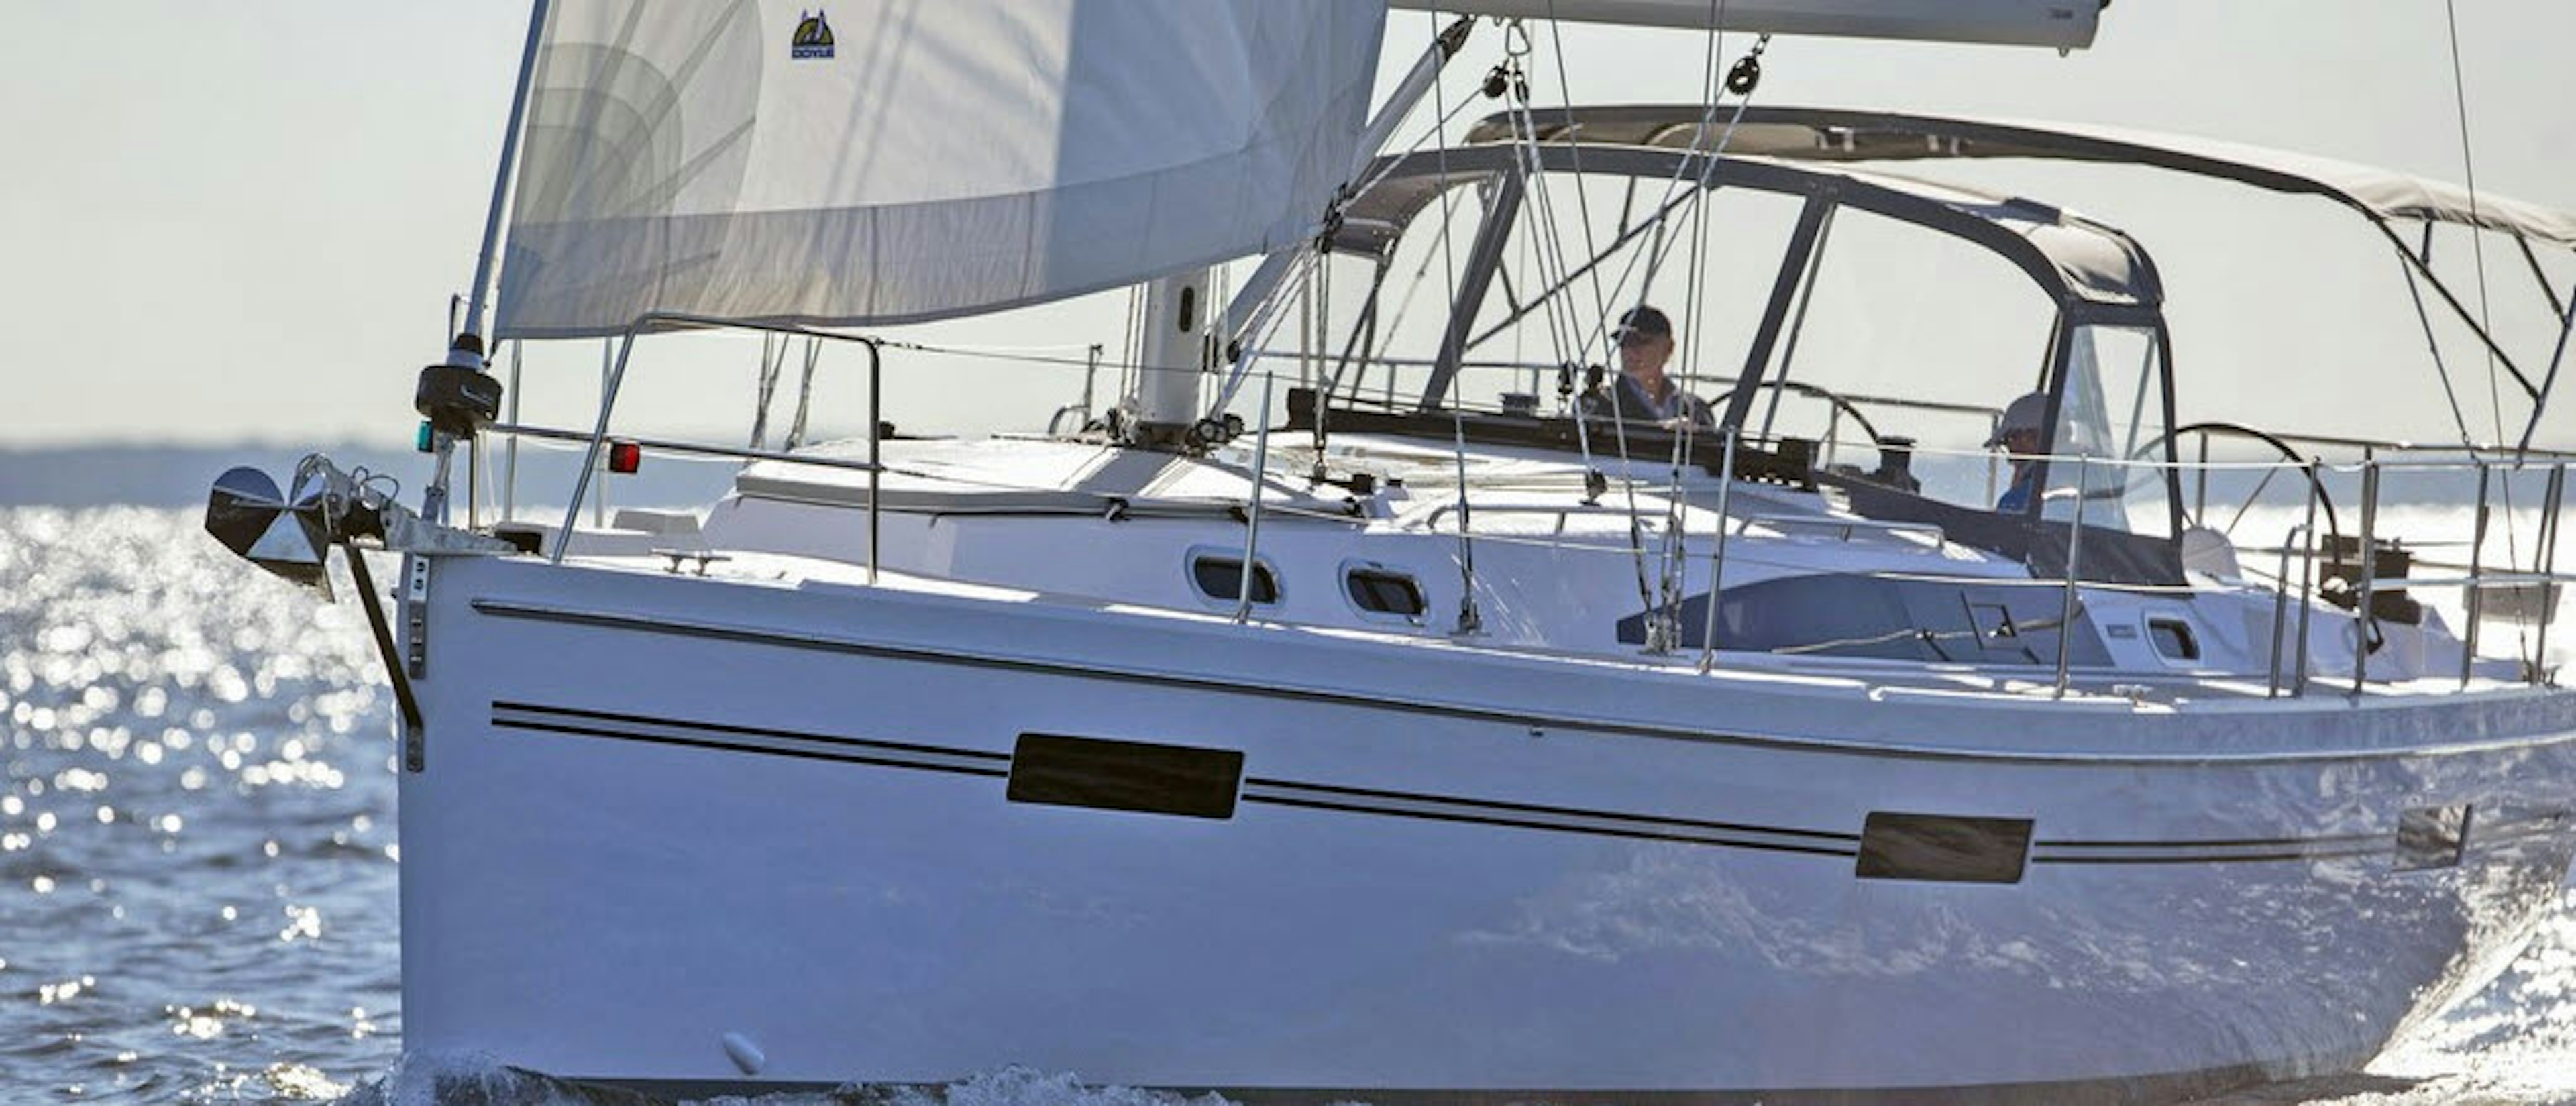 2016 Catalina Yachts Catalina 425 - Fin Keel